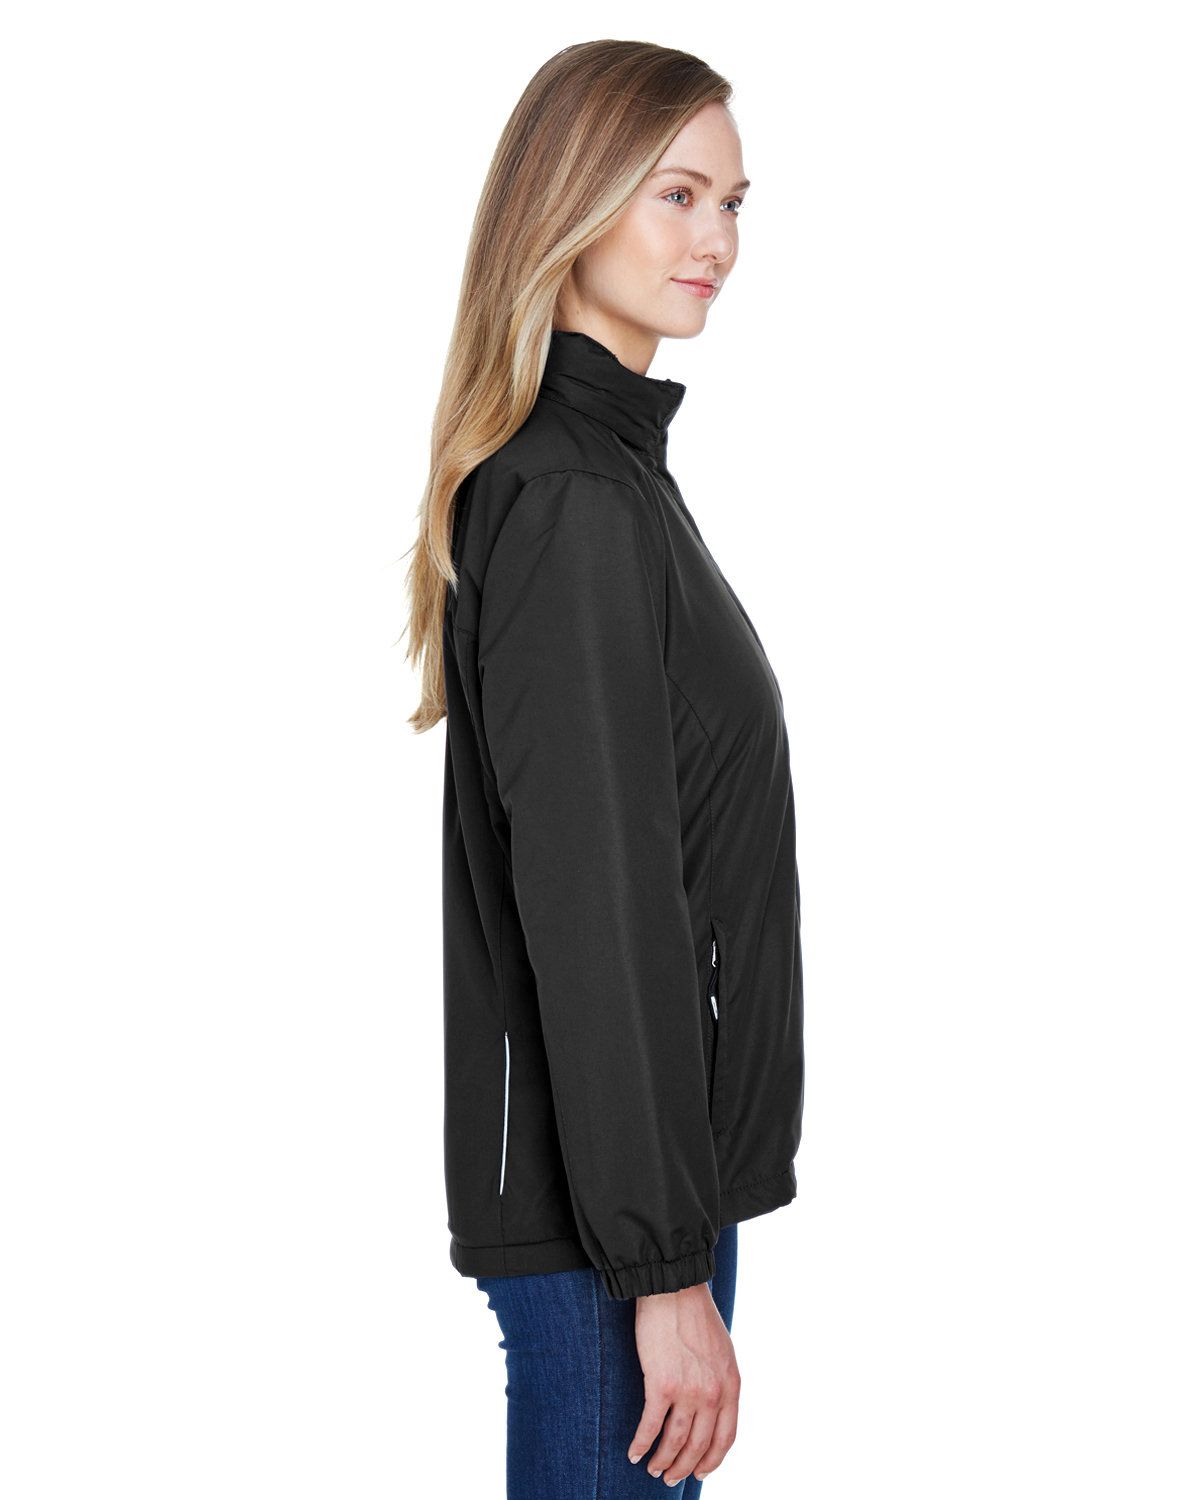 'Core365 78224 Women's Profile Fleece Lined All Season Jacket'